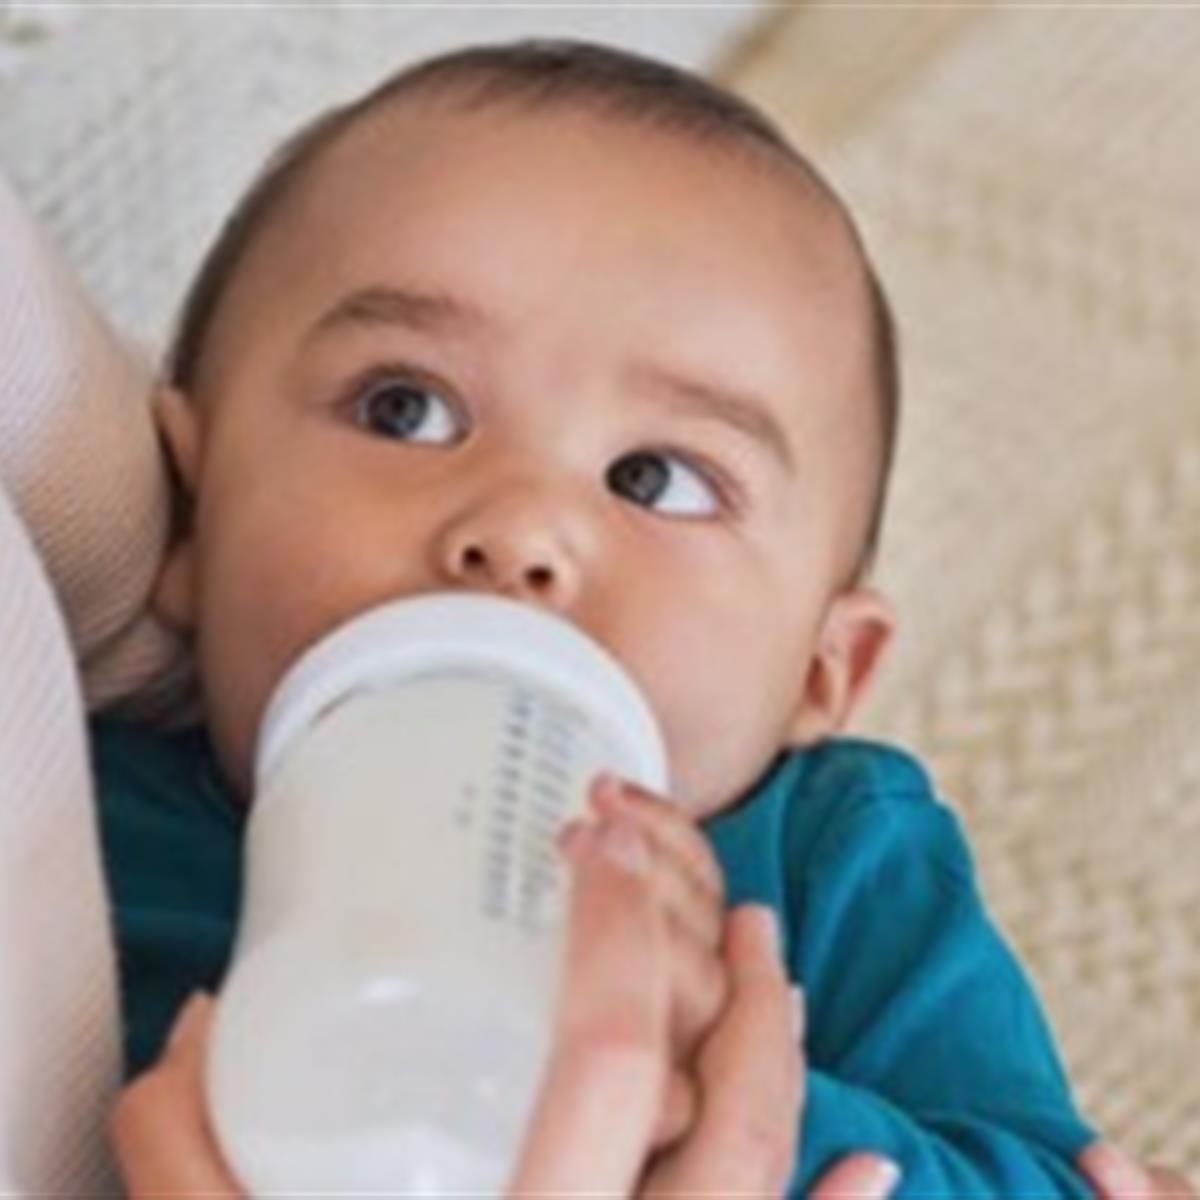 Infant Formula Feeding, Nutrition